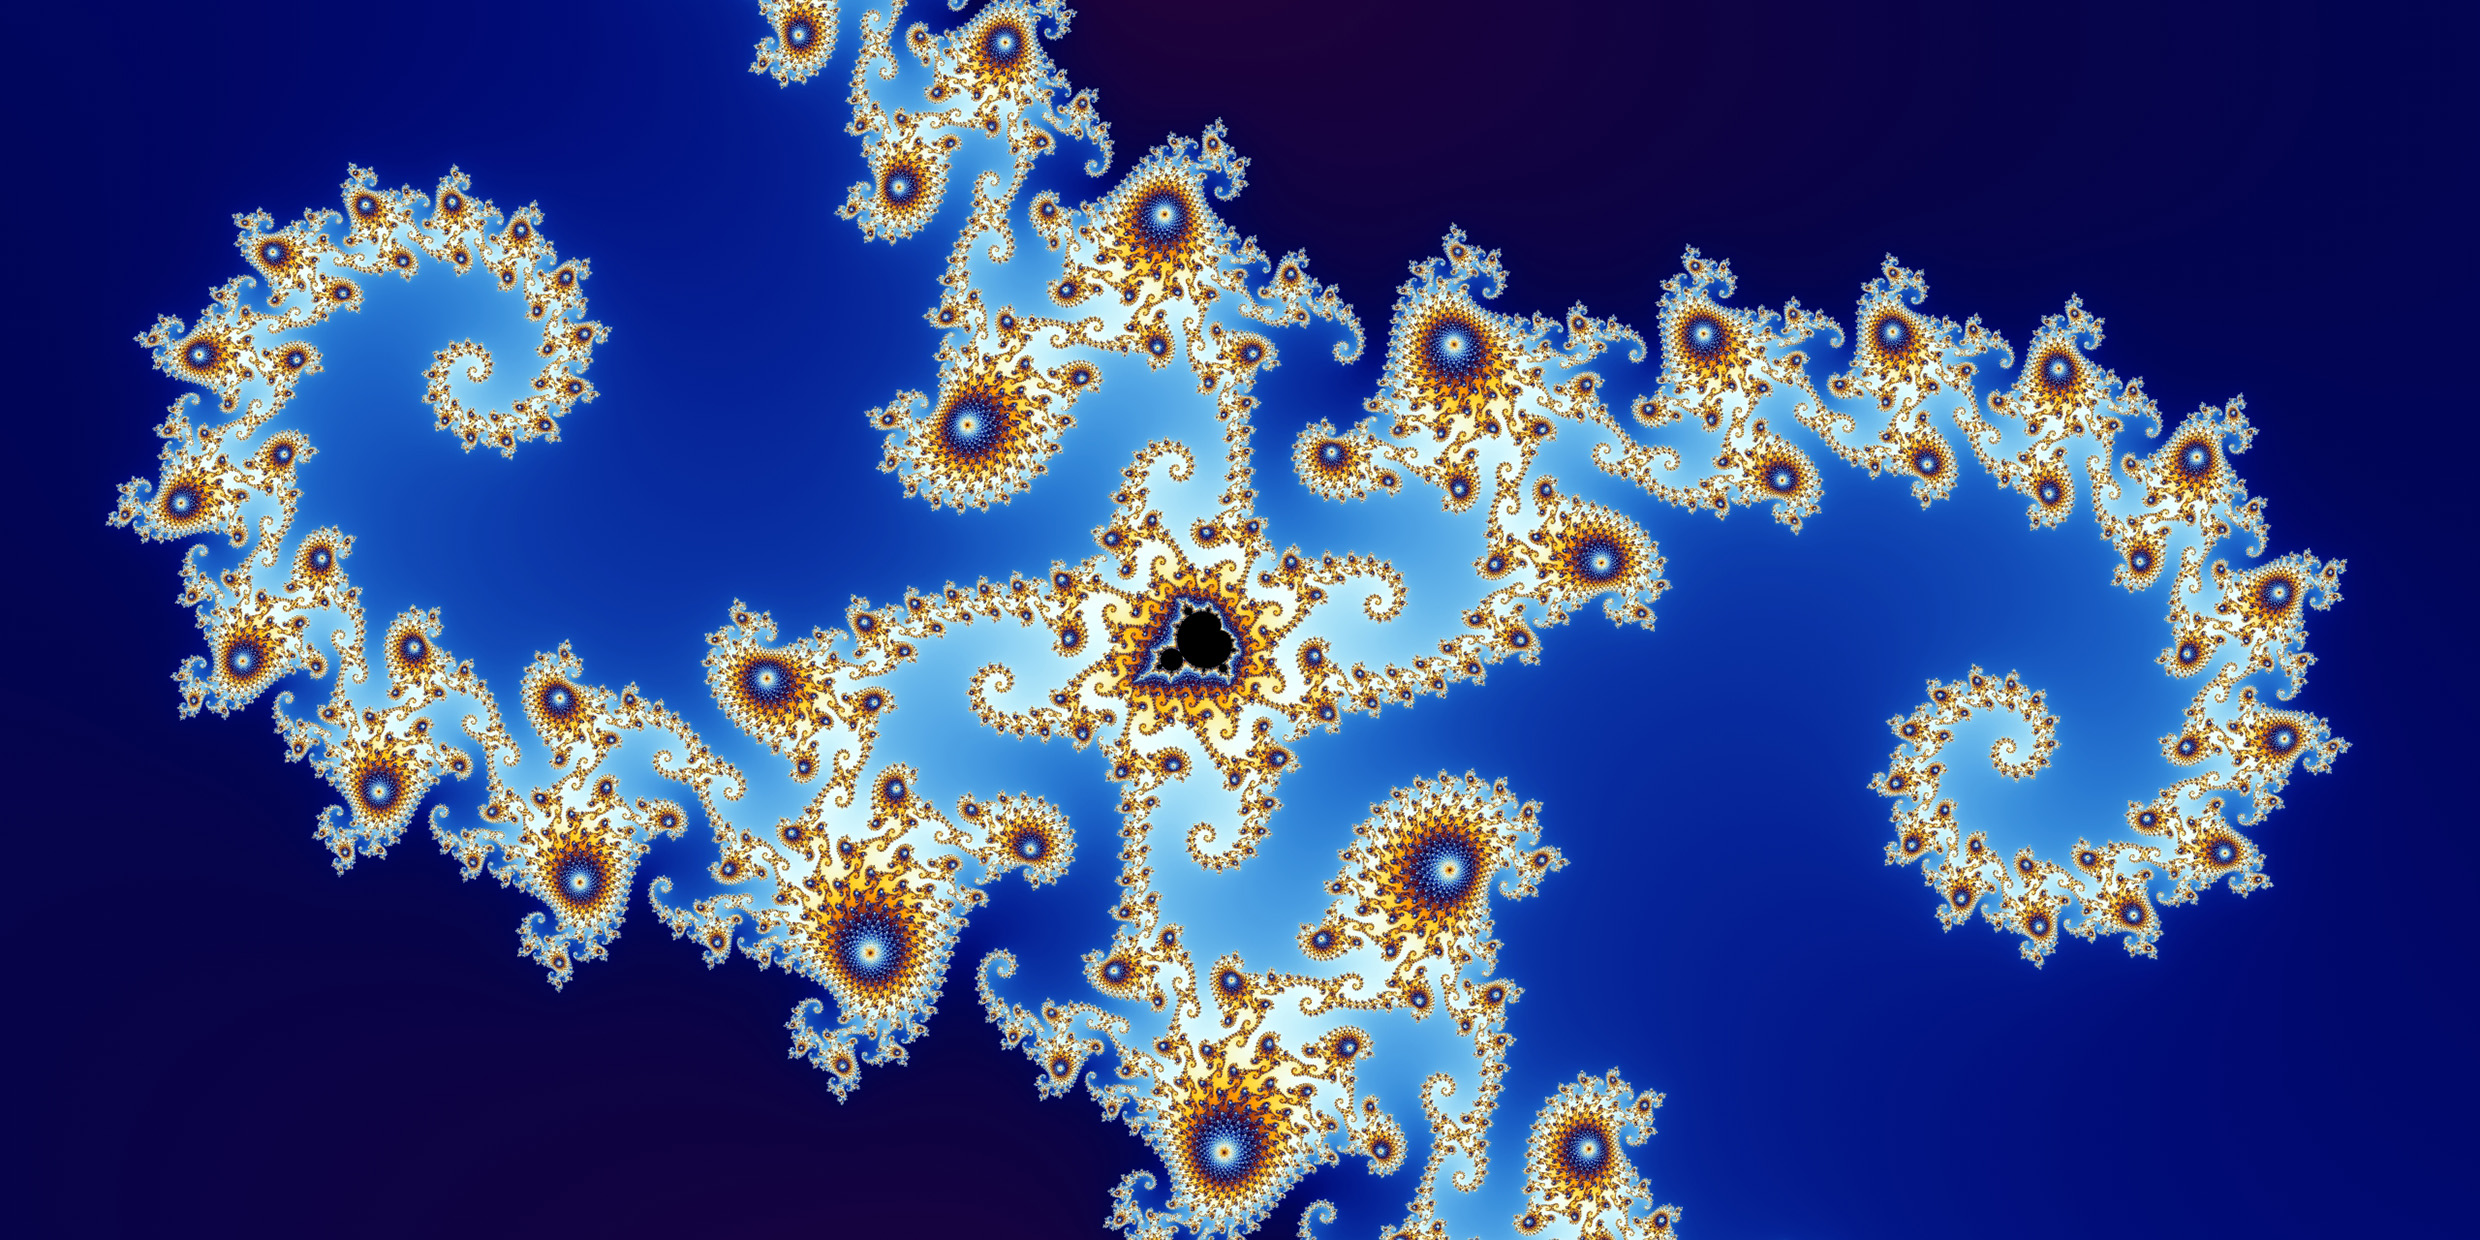 Image of fractal